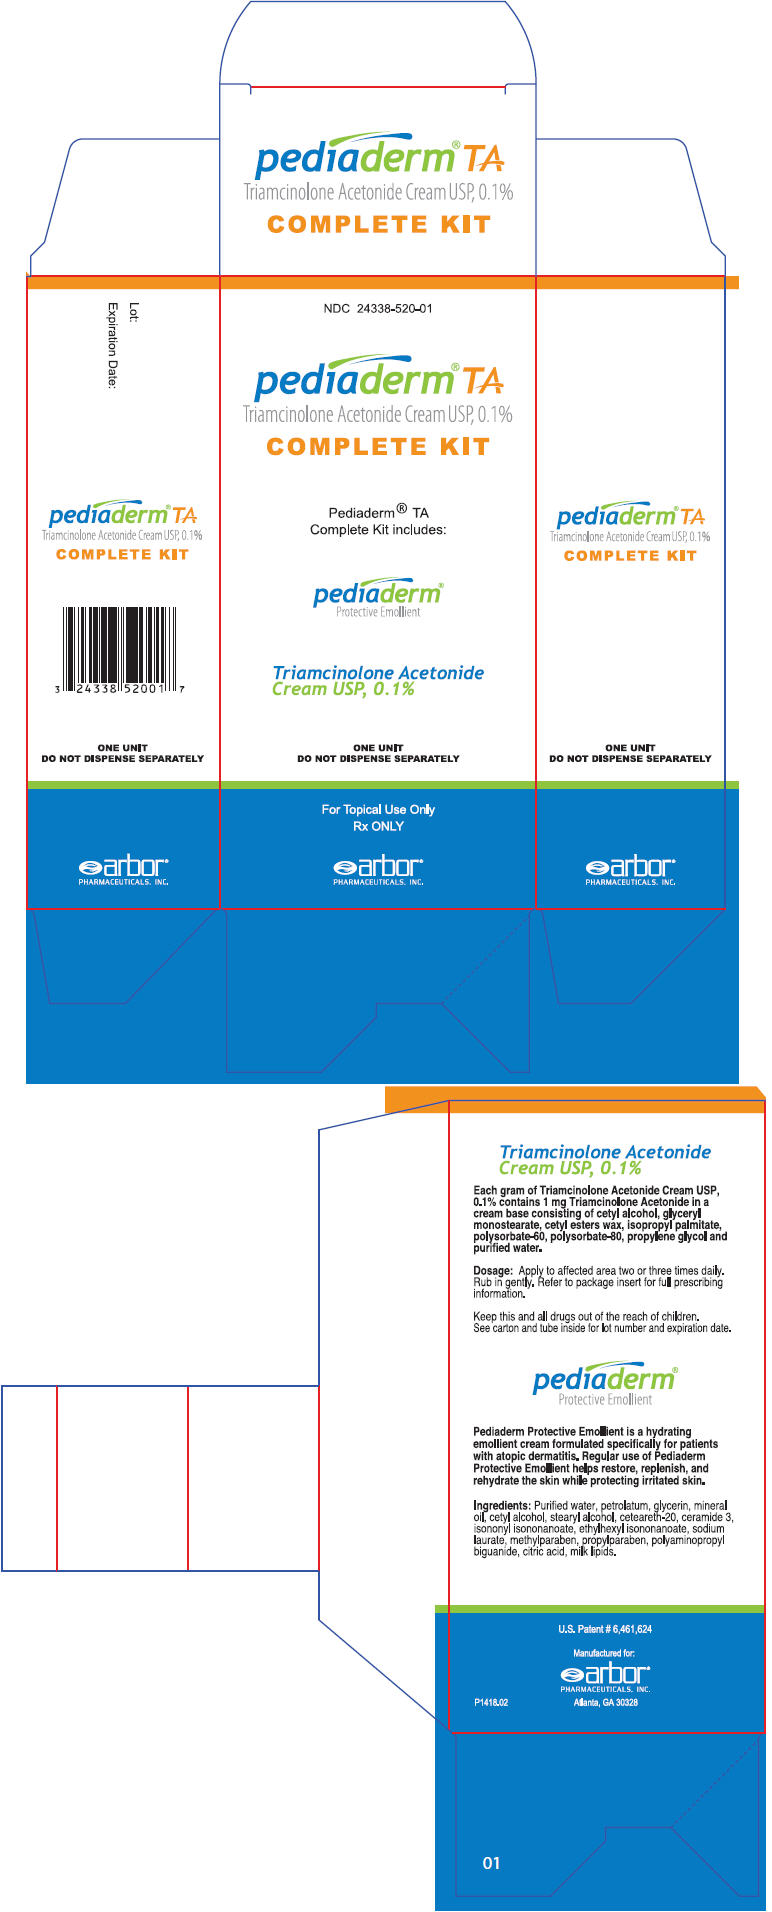 PRINCIPAL DISPLAY PANEL - Complete Kit Carton